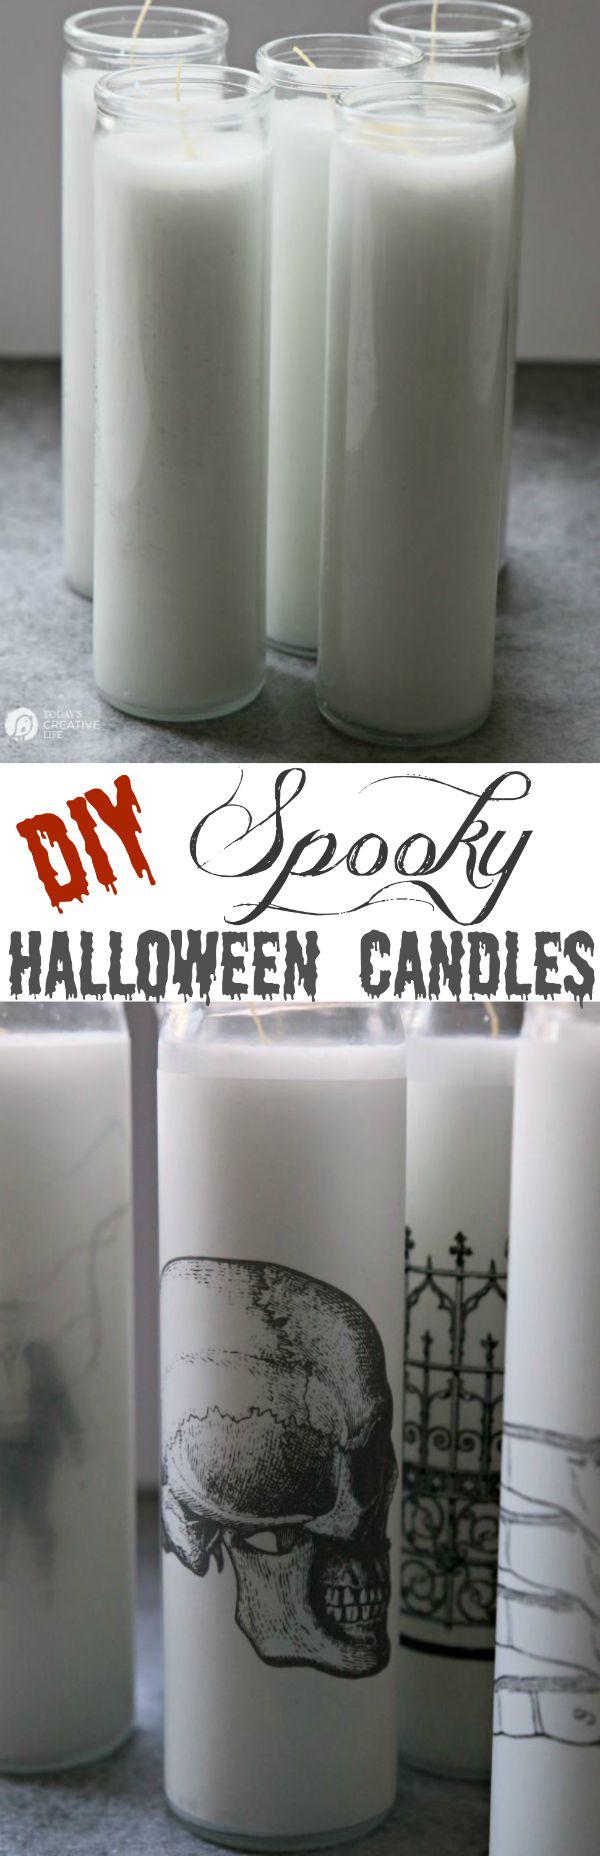 DIY spooky candles with skulls and bones (via todayscreativelife.com)